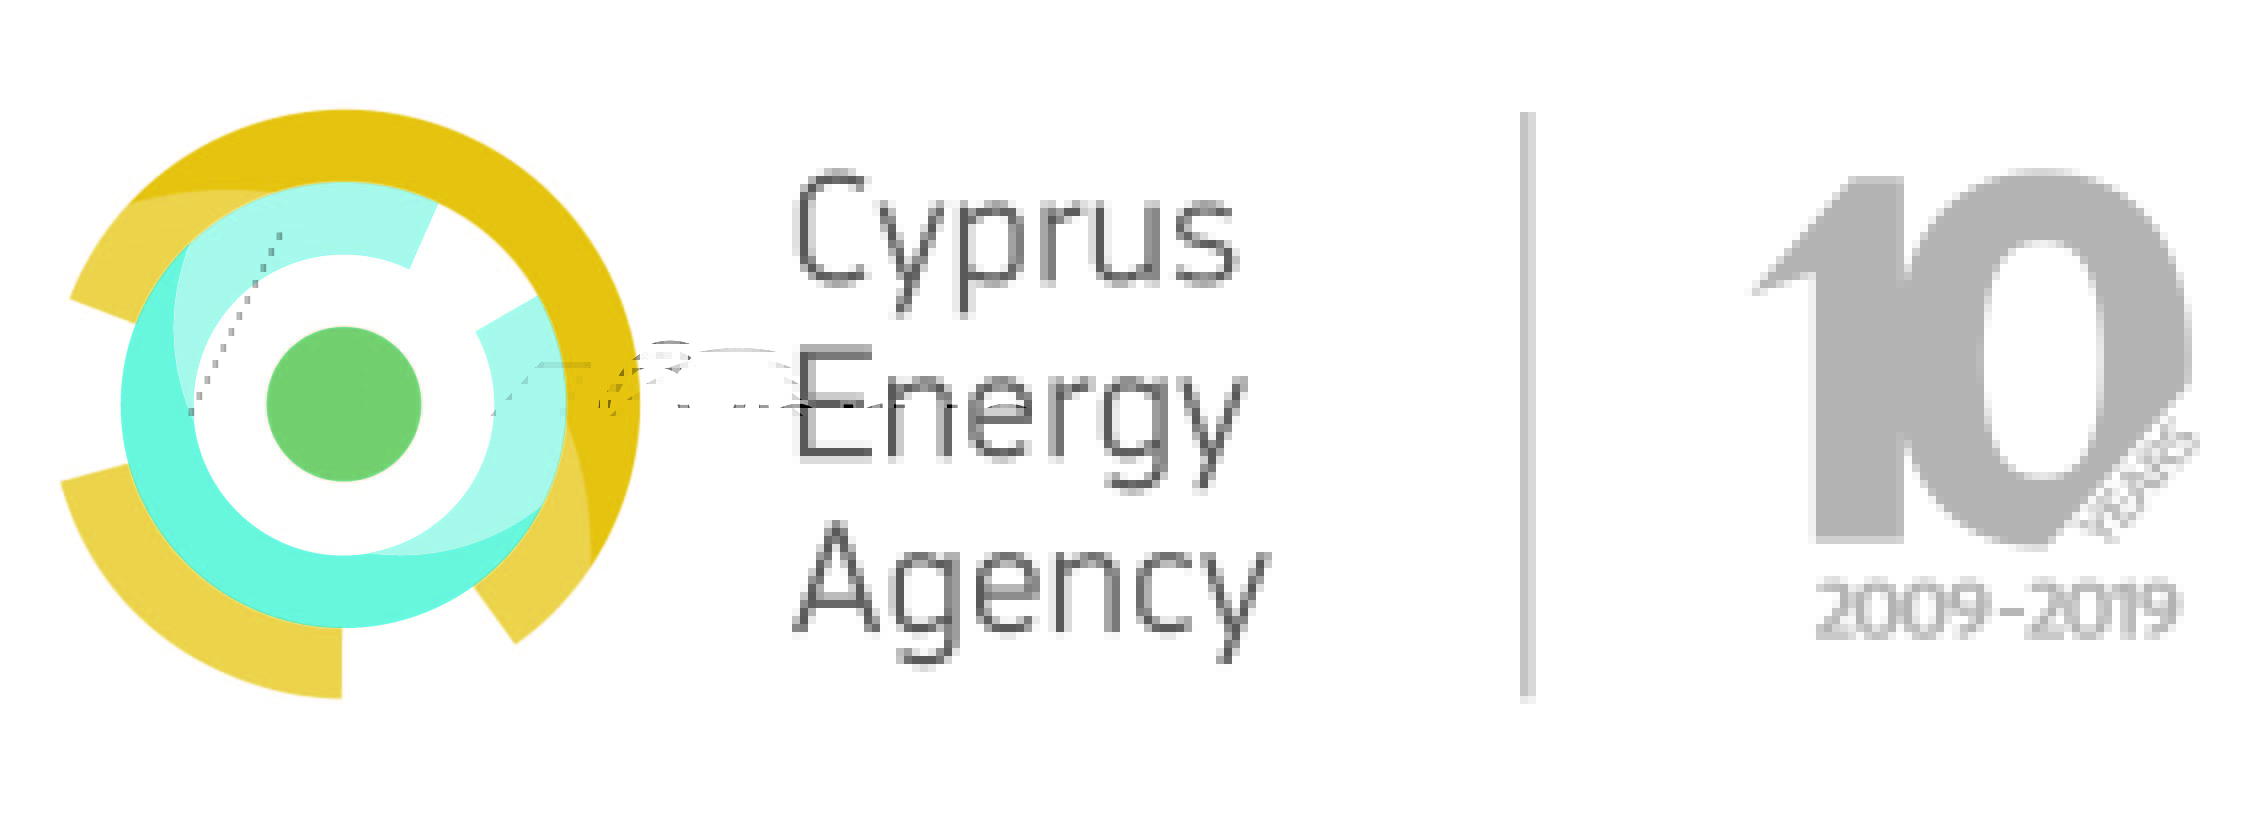 CEA - Cyprus Energy Agency